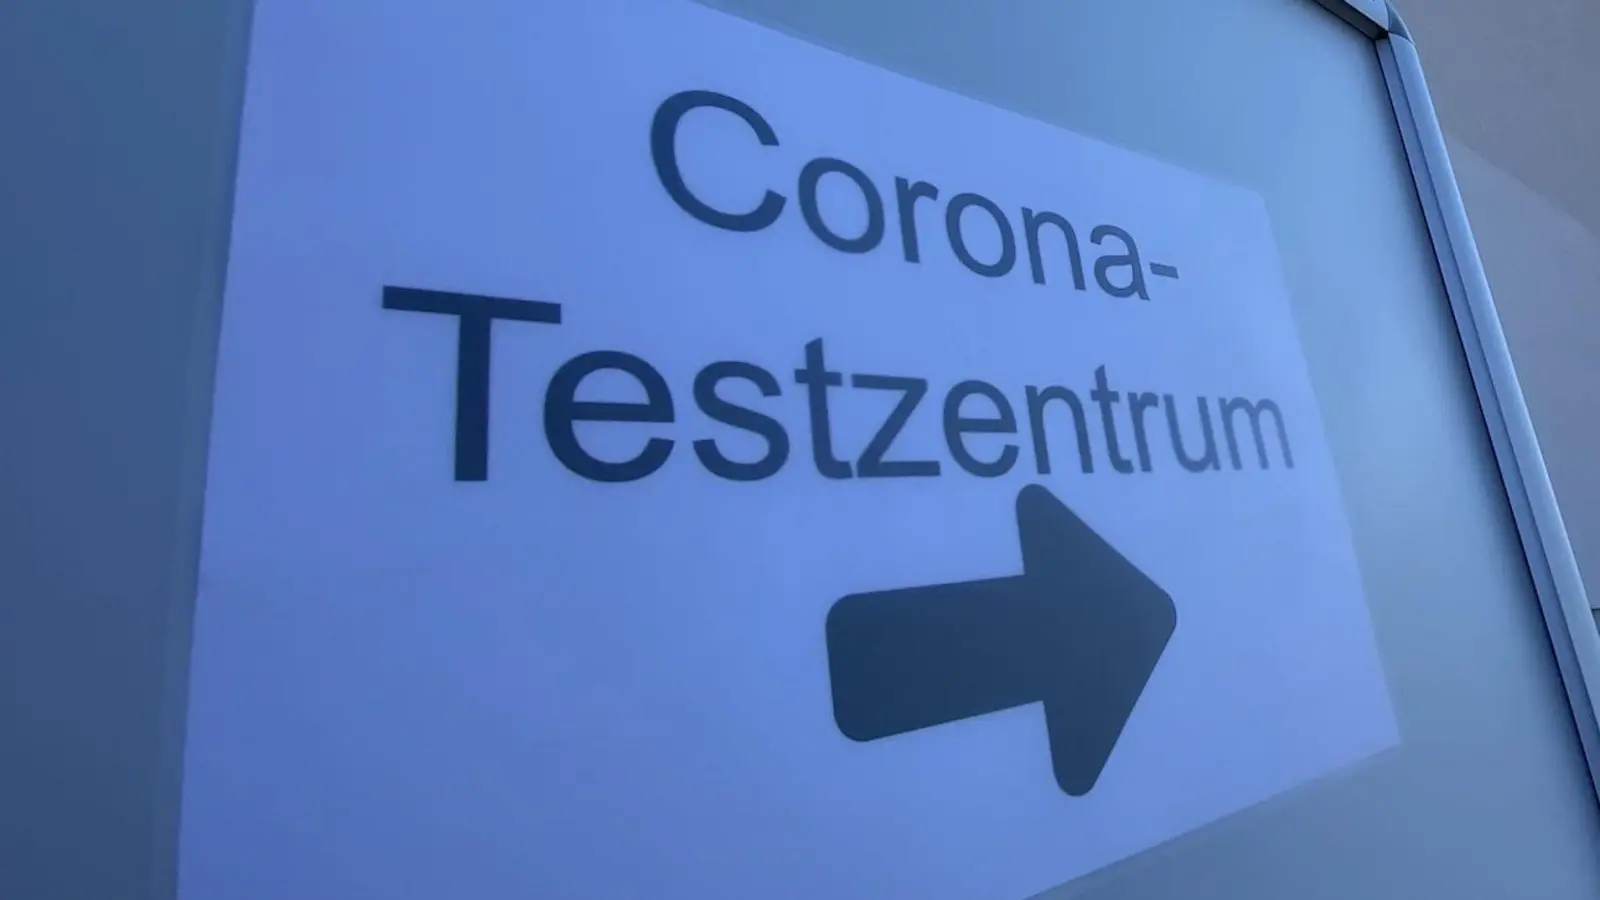 Corona-Testzentrum ist diese Woche in der Jubisch-Turnhalle untergebracht (Foto: taucha-kompakt.de)